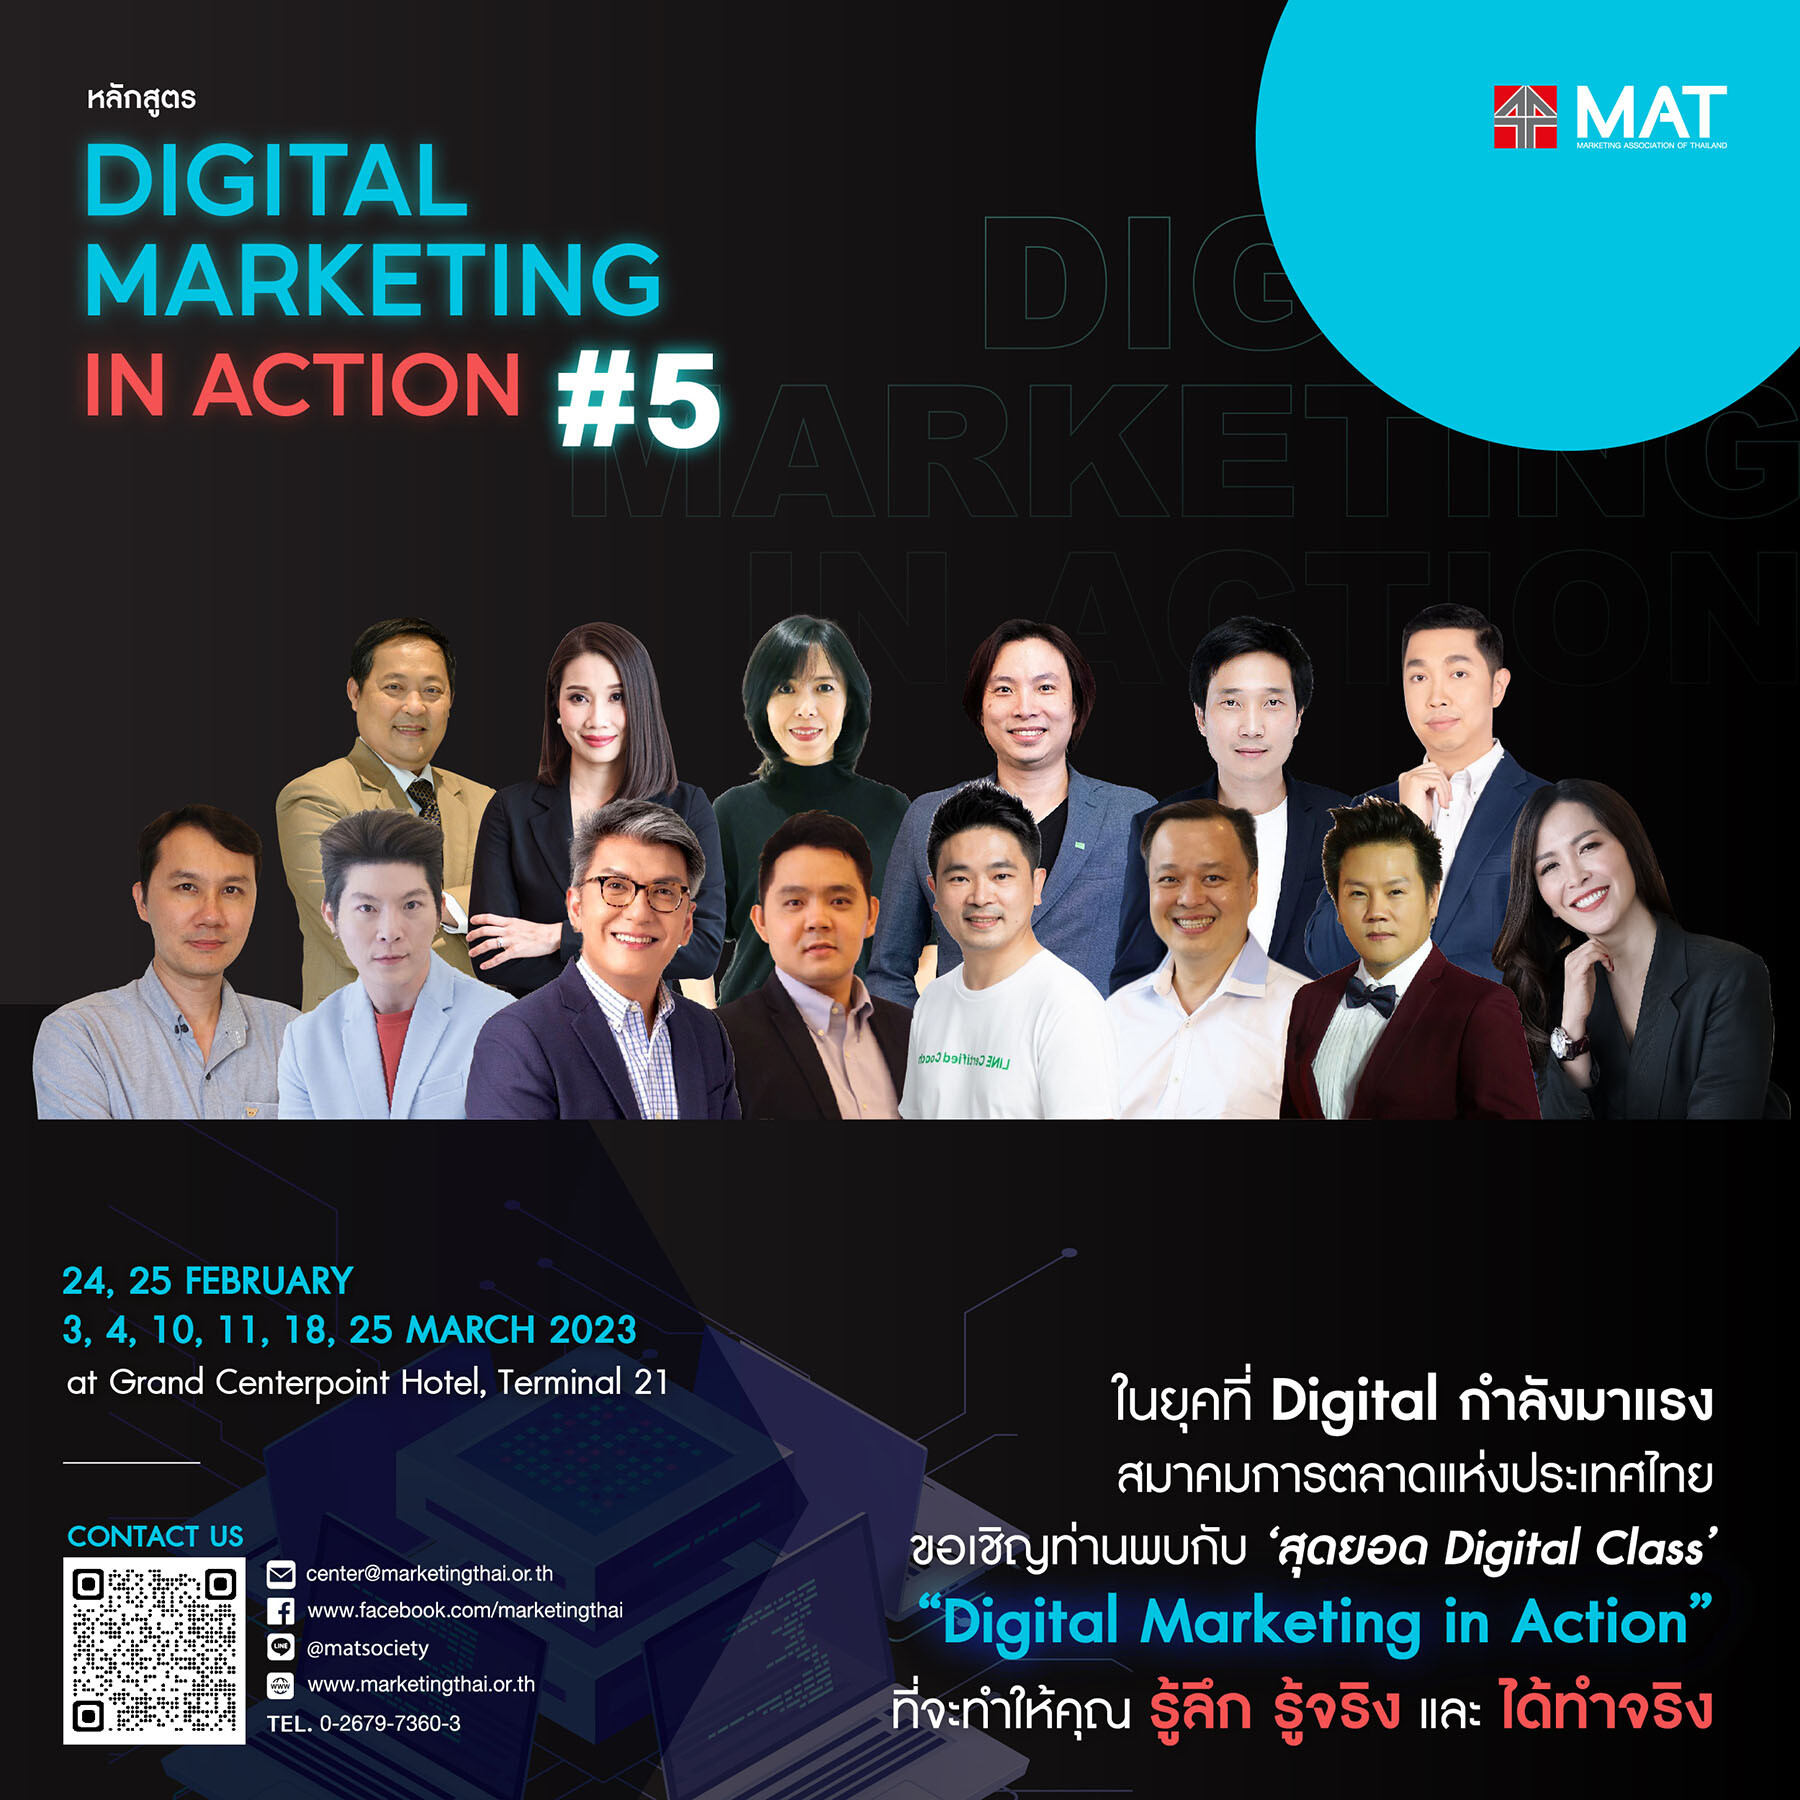 สมาคมการตลาดแห่งประเทศไทย ขอเชิญเข้าร่วมคอร์ส Digital Marketing In Action รุ่นที่ 5"